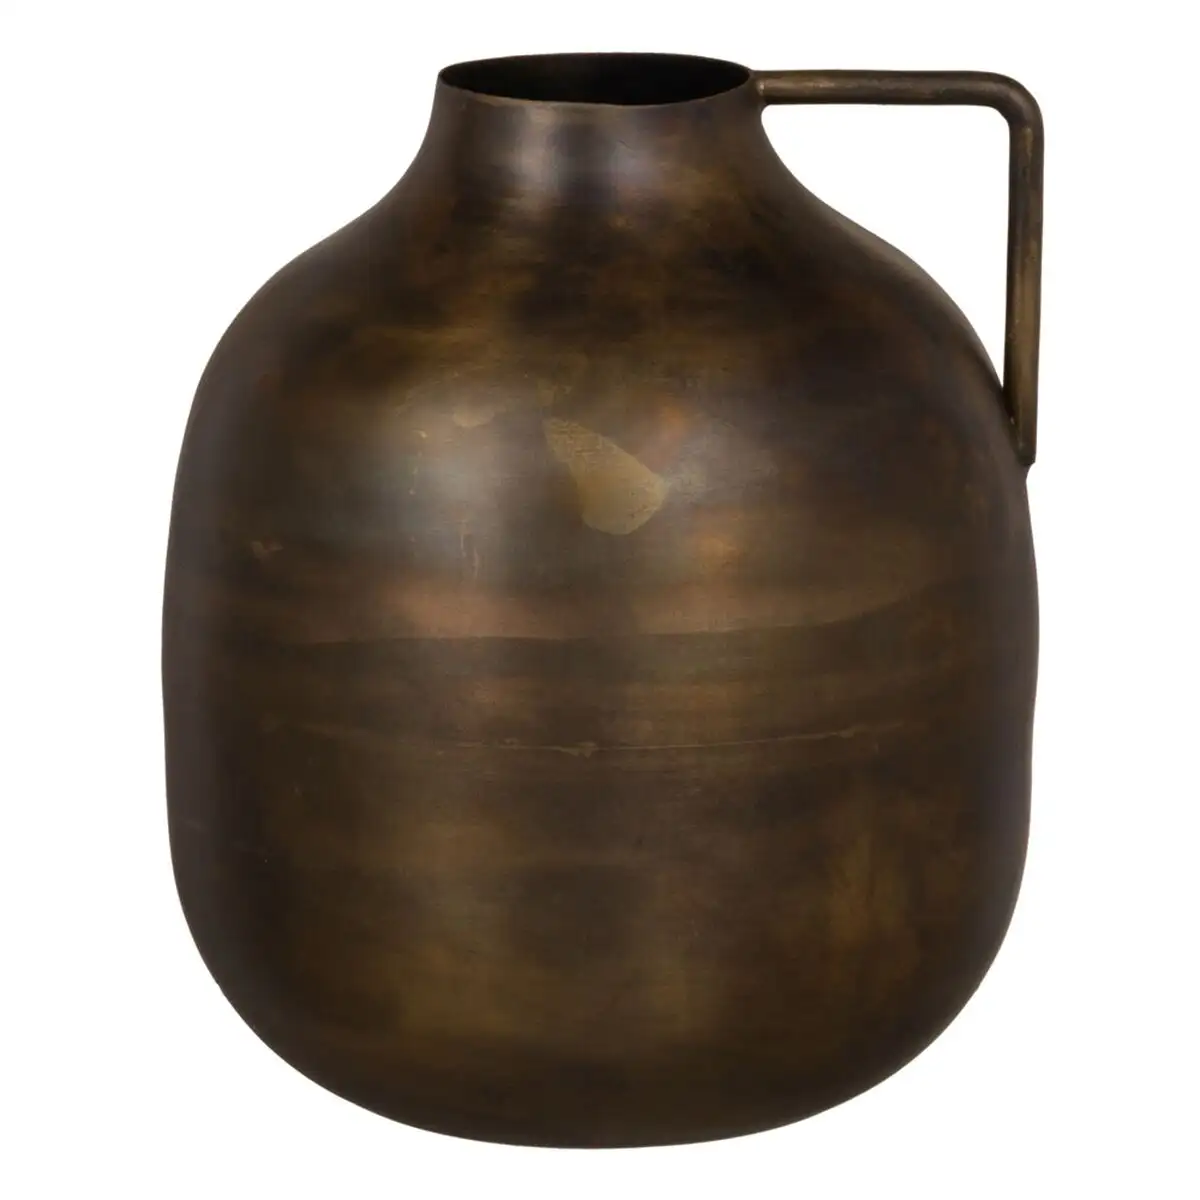 Vase dore metal 20 x 20 x 24 cm_6626. DIAYTAR SENEGAL - Où Choisir est une Célébration de l'Artisanat Local. Découvrez notre boutique en ligne et choisissez des produits qui incarnent la passion des artisans sénégalais.